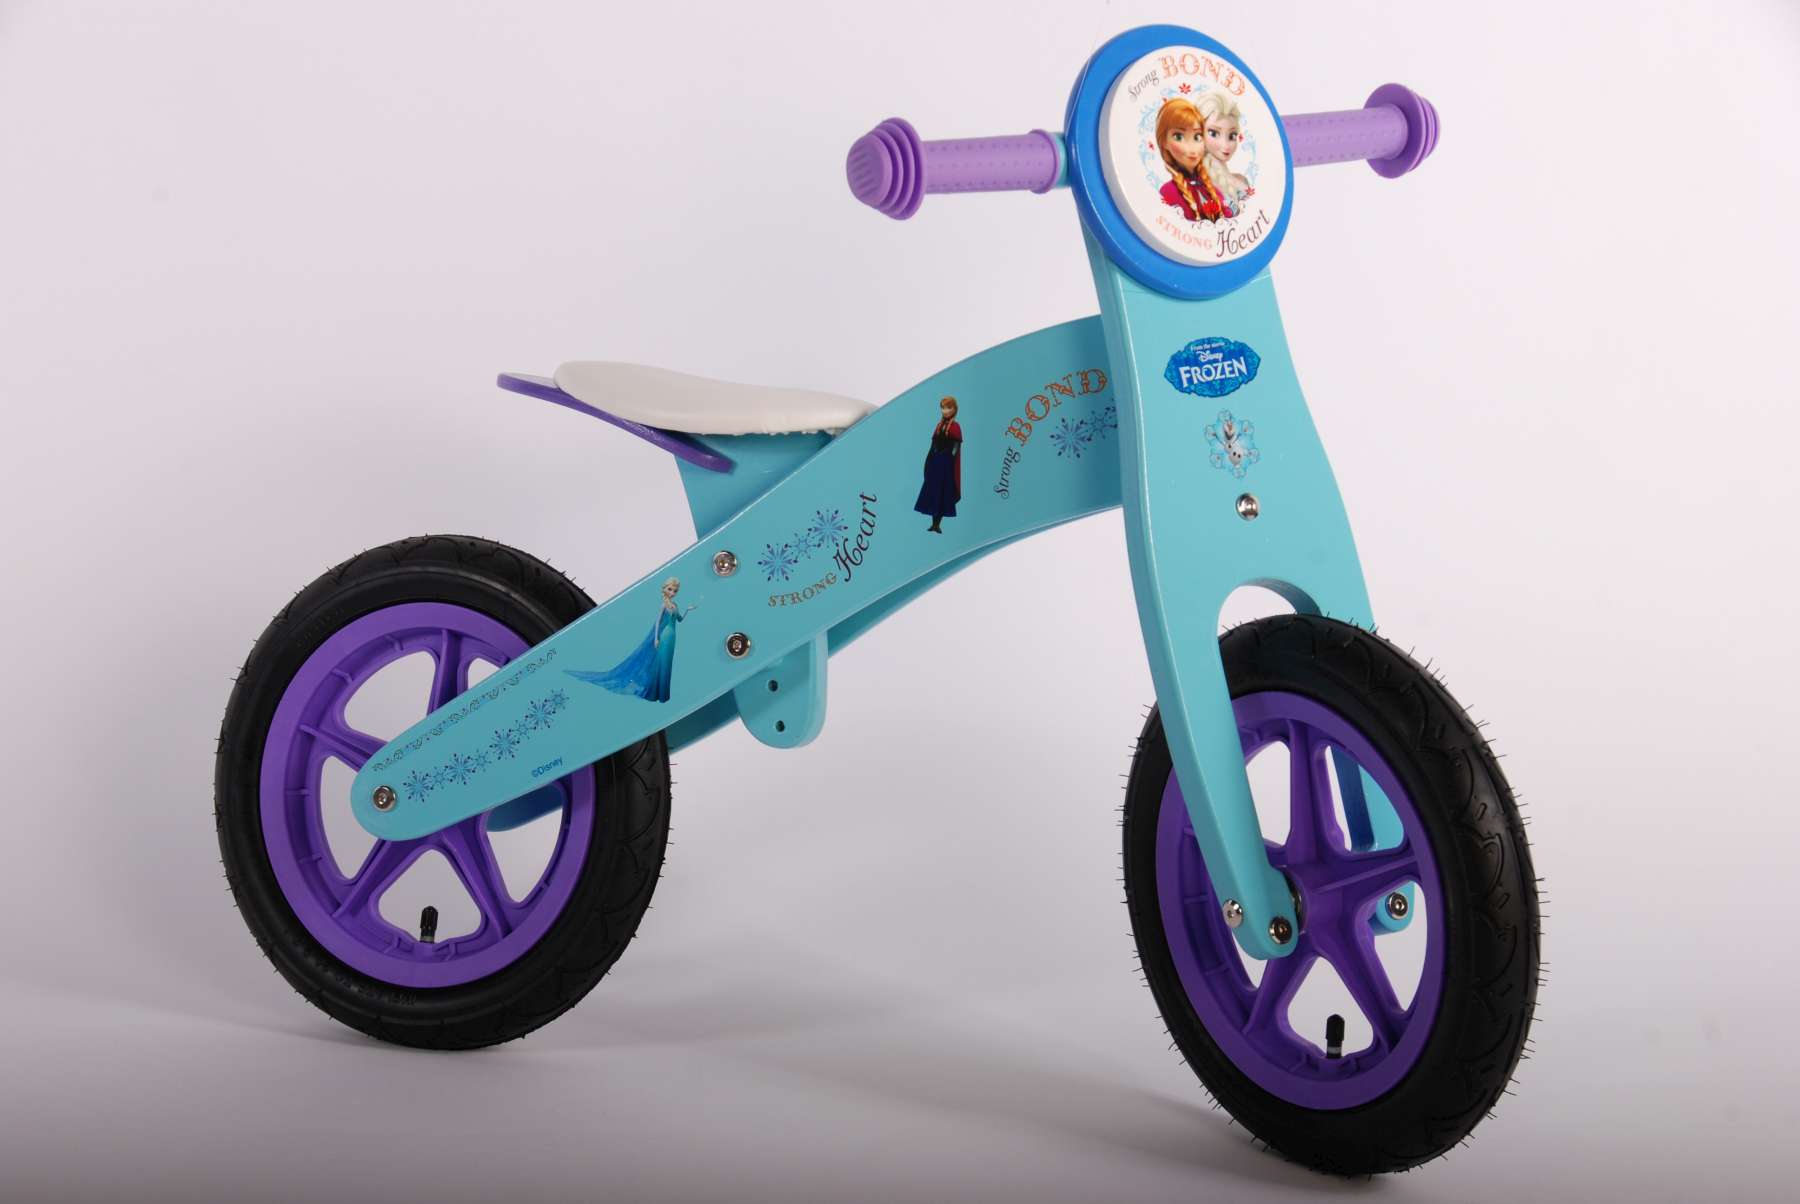 Kinderlernrad Laufrad Holz Frozen Eiskönigin Kindrerfahrrad 12 Zoll Roller Kind 